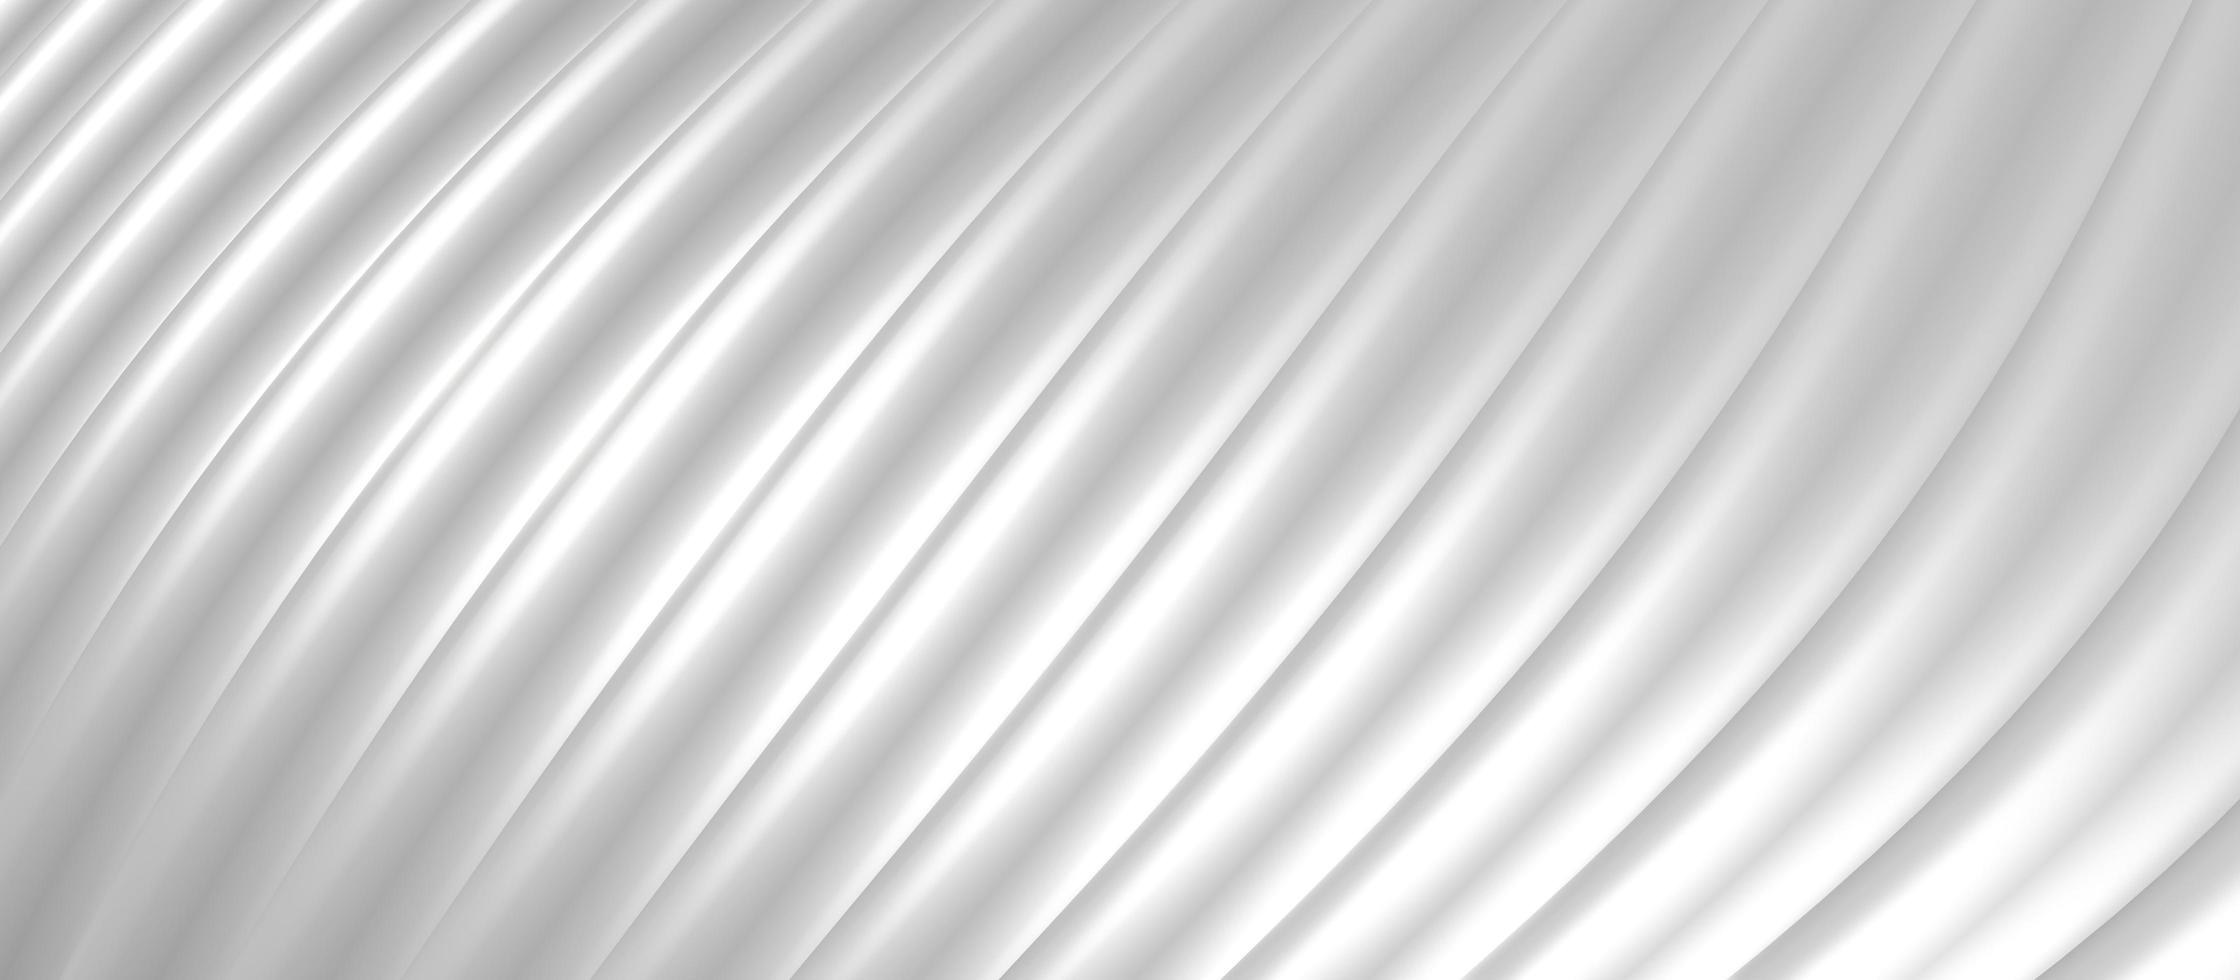 weiße kunststoff welle parallele linien hintergrund welle einer gebogenen kurve 3d illustration foto